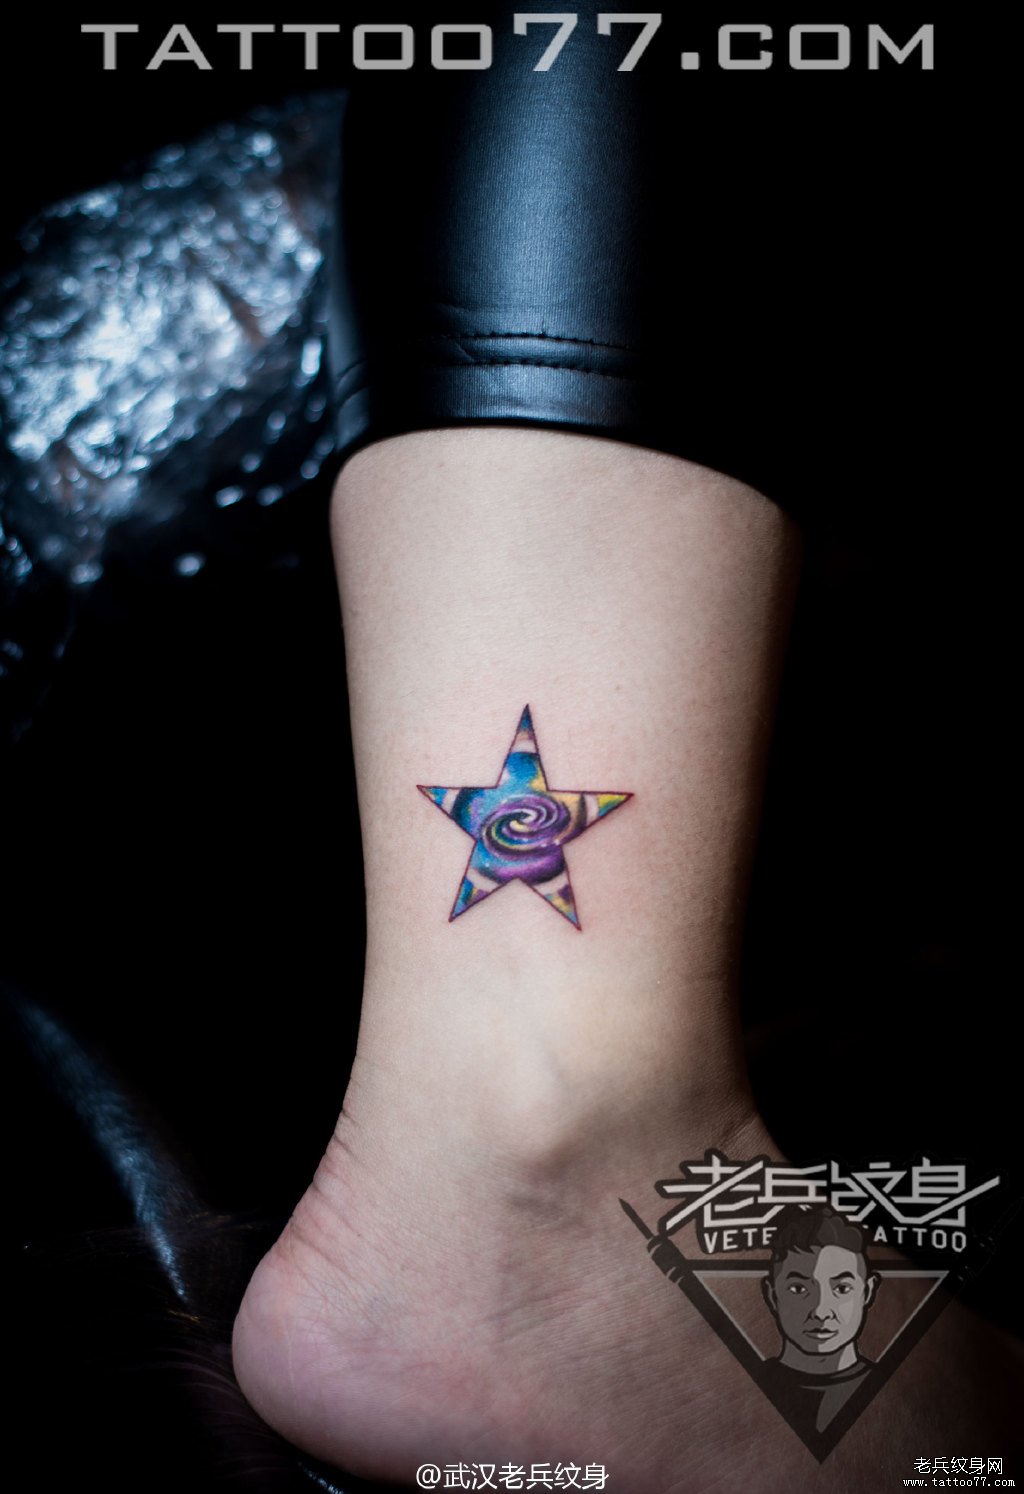 脚踝星空五角纹身作品由武汉专业纹身店打造